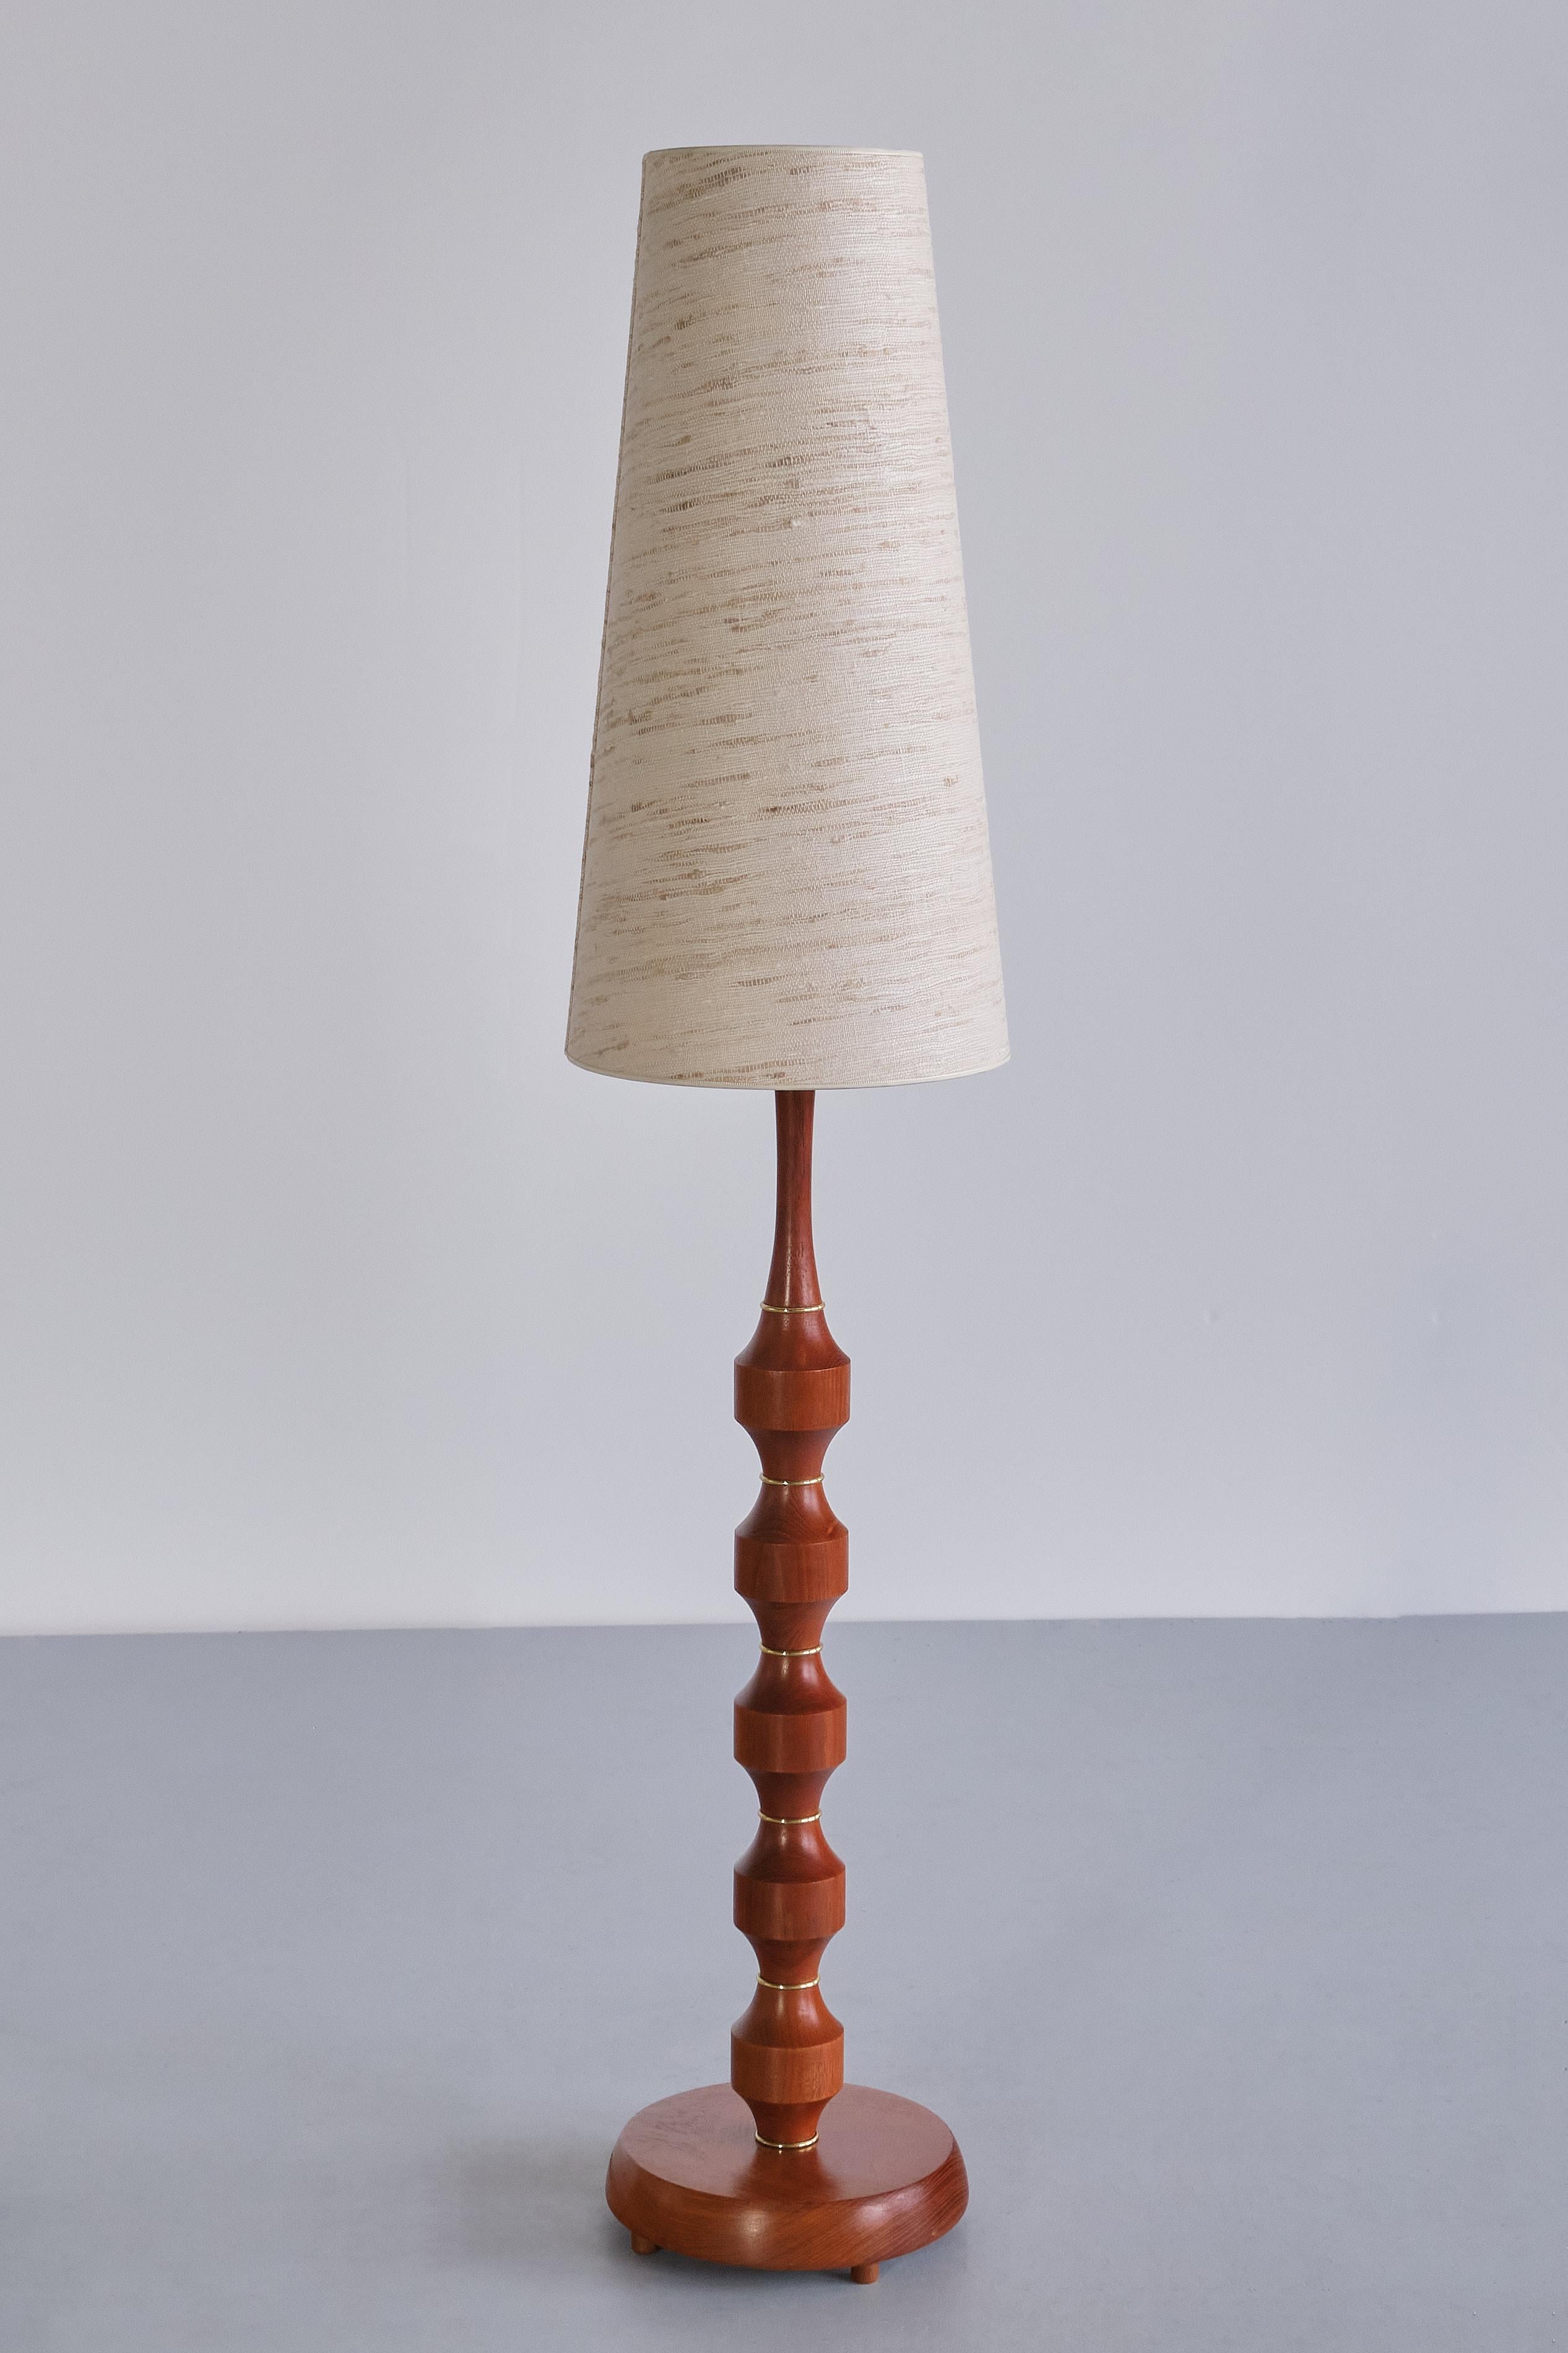 Möllers Armatur Eskilstuna Floor/ Table Lamp in Teak, Brass, Silk, Sweden, 1950s For Sale 1